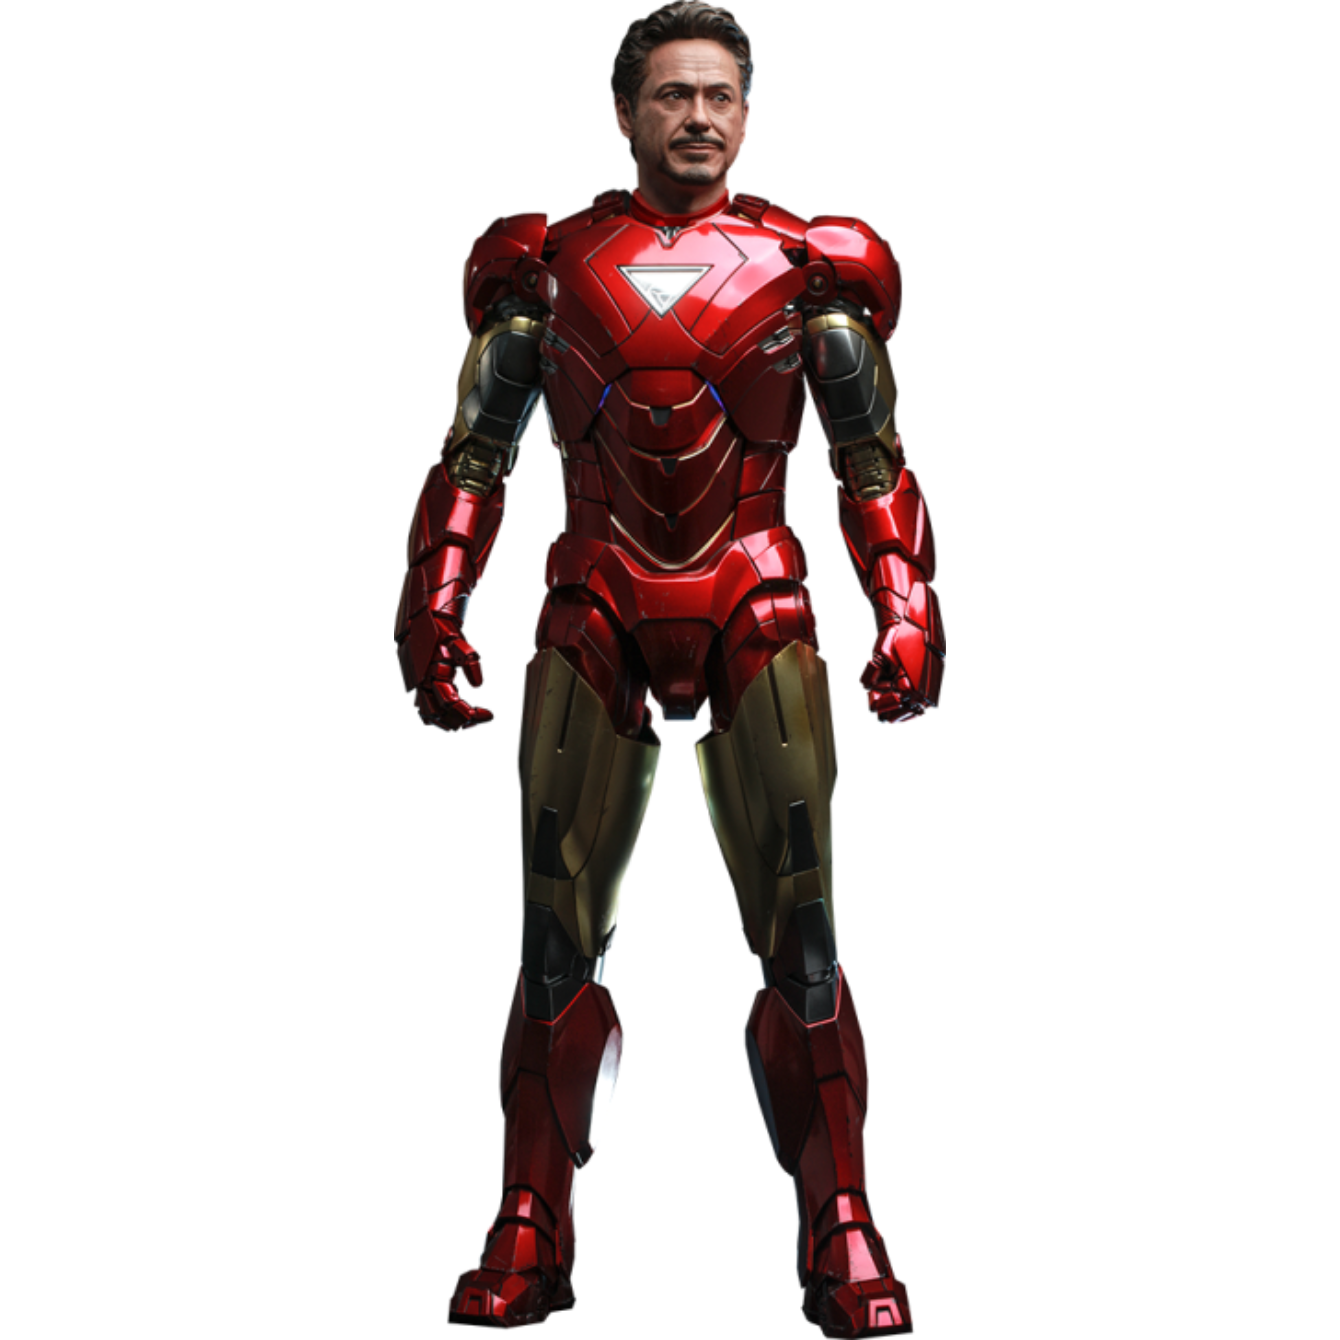 PRE-ORDER Iron Man Mark VI (2.0)